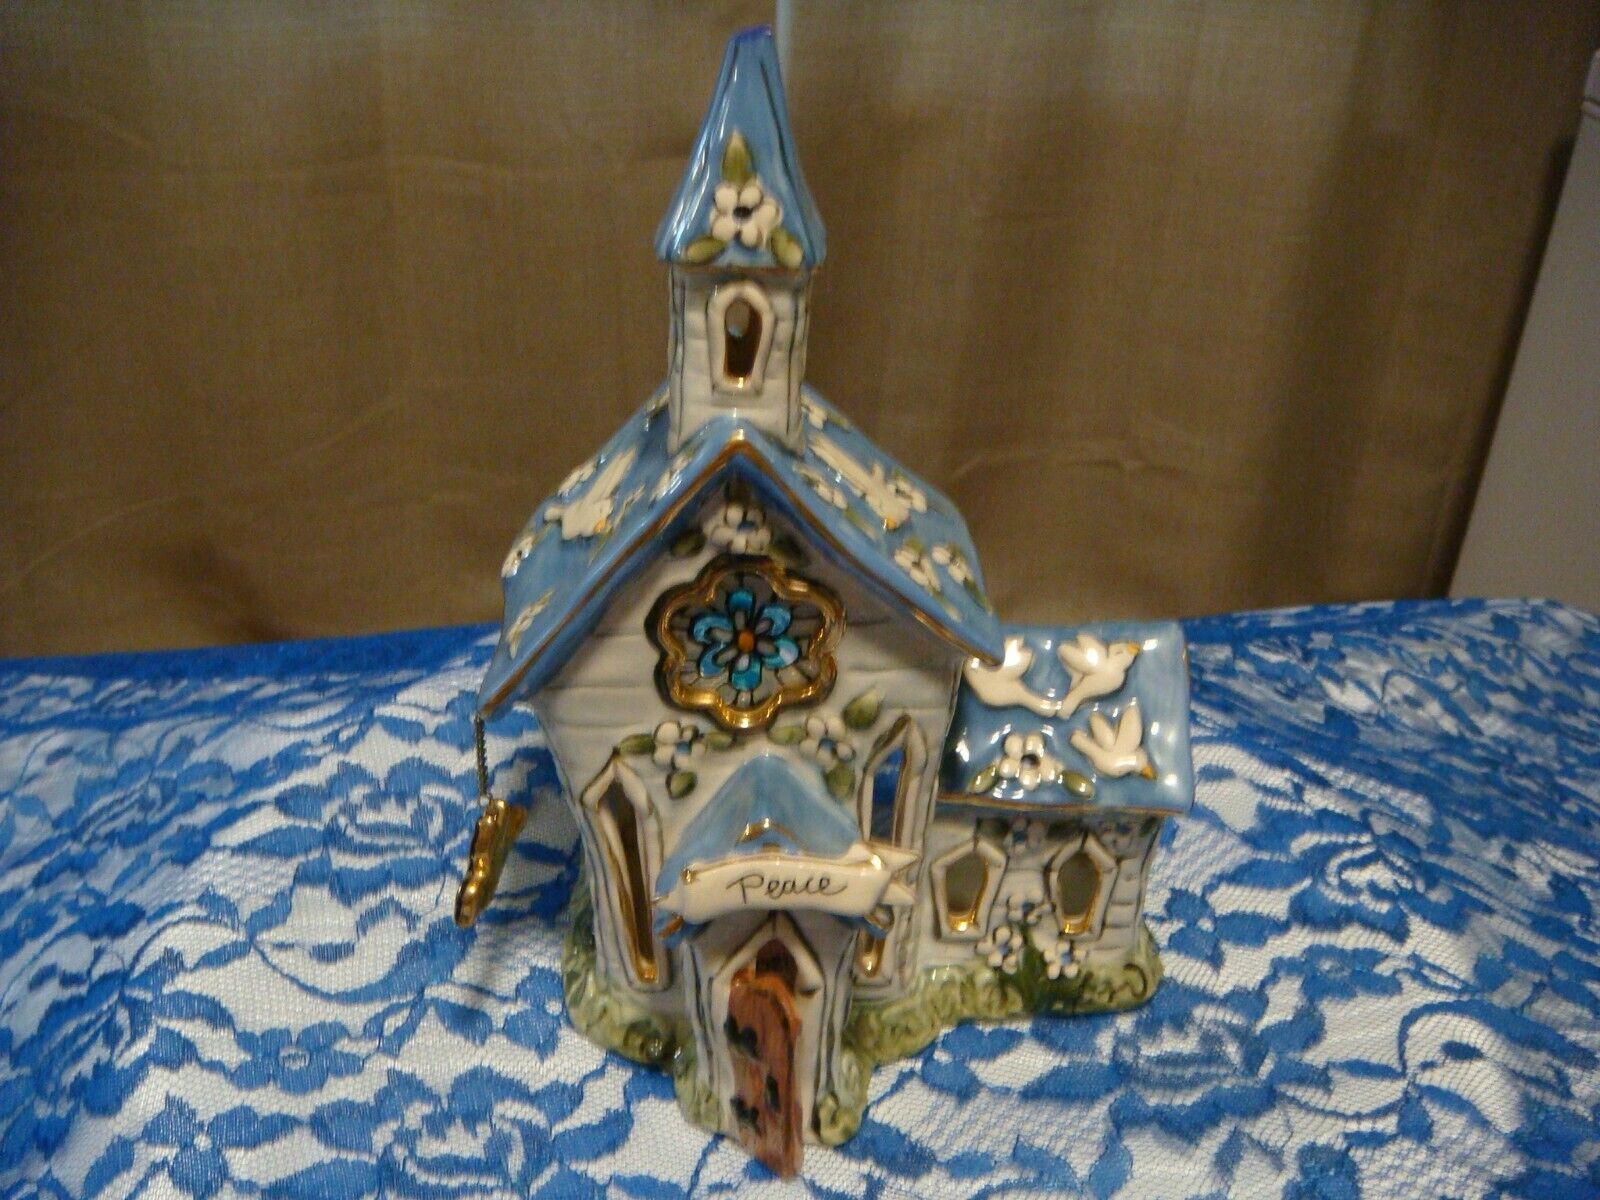 BLUE SKY CHURCH tealight holder VTG CLAYWORKS PEACE 2004 whimsy